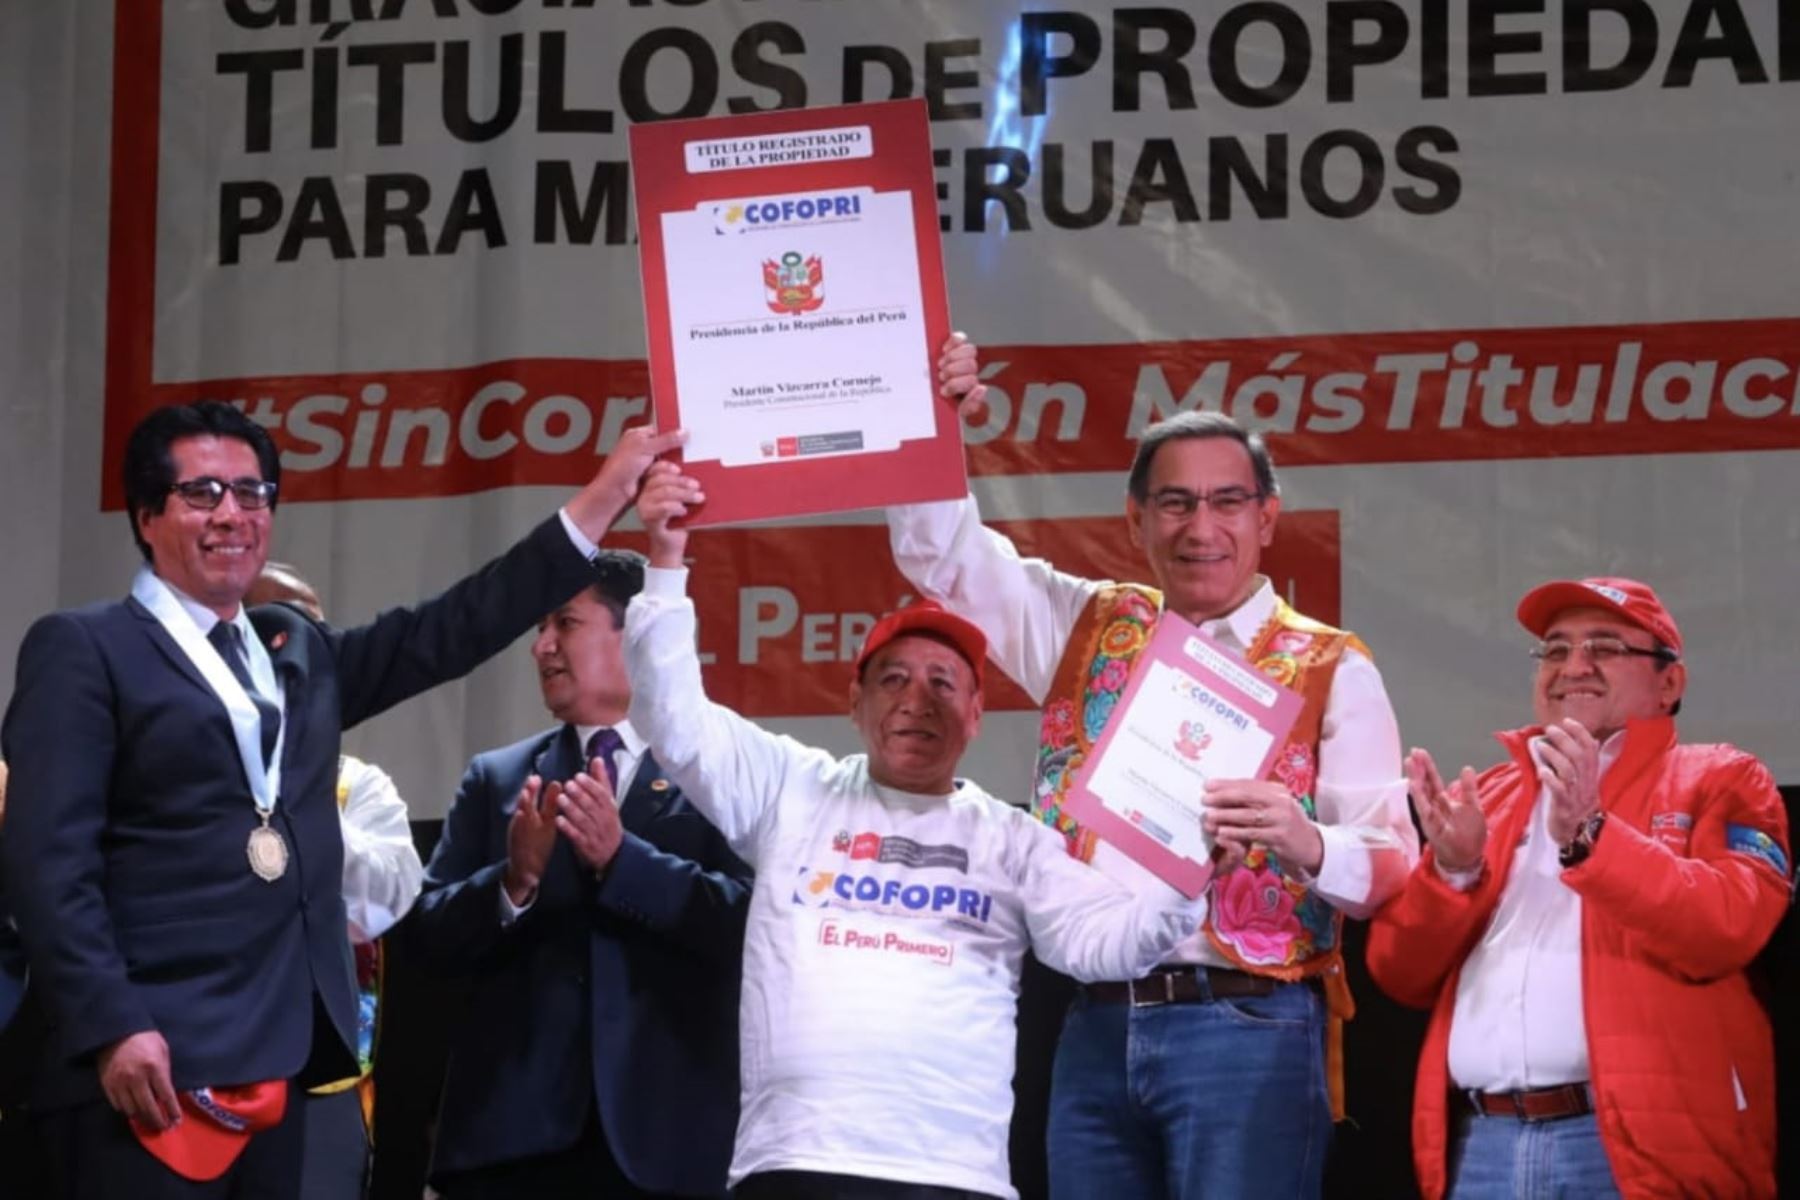 ANDINA/DifusiónPresidente Martín Vizcarra encabeza ceremonia de entrega de títulos de propiedad que beneficia a más de 10,000 pobladores de Junín. ANDINA/Difusión